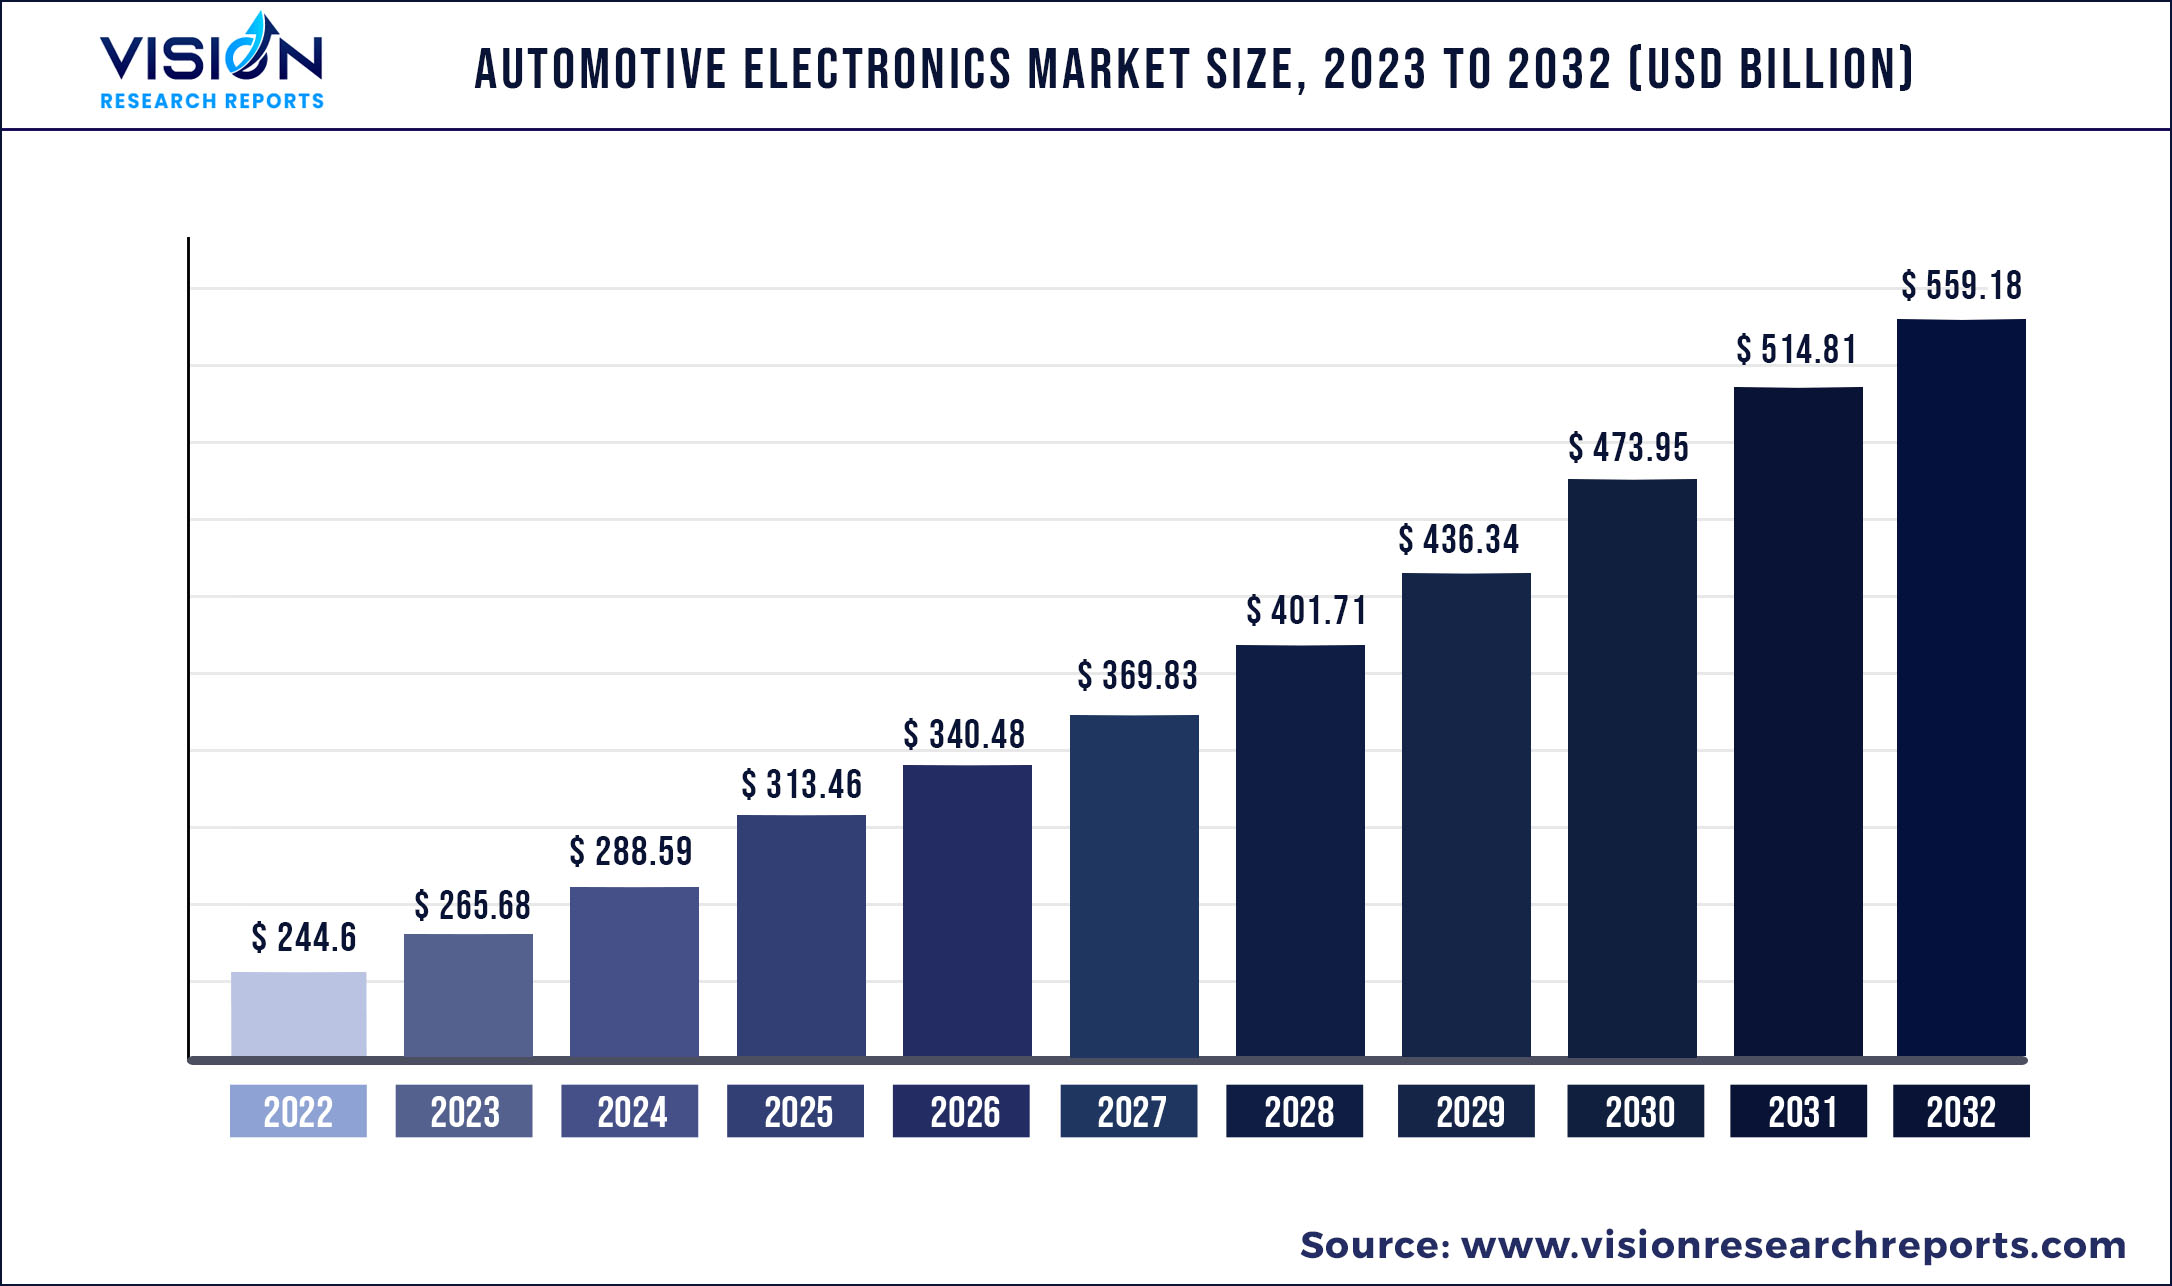 Automotive Electronics Market Size 2023 to 2032